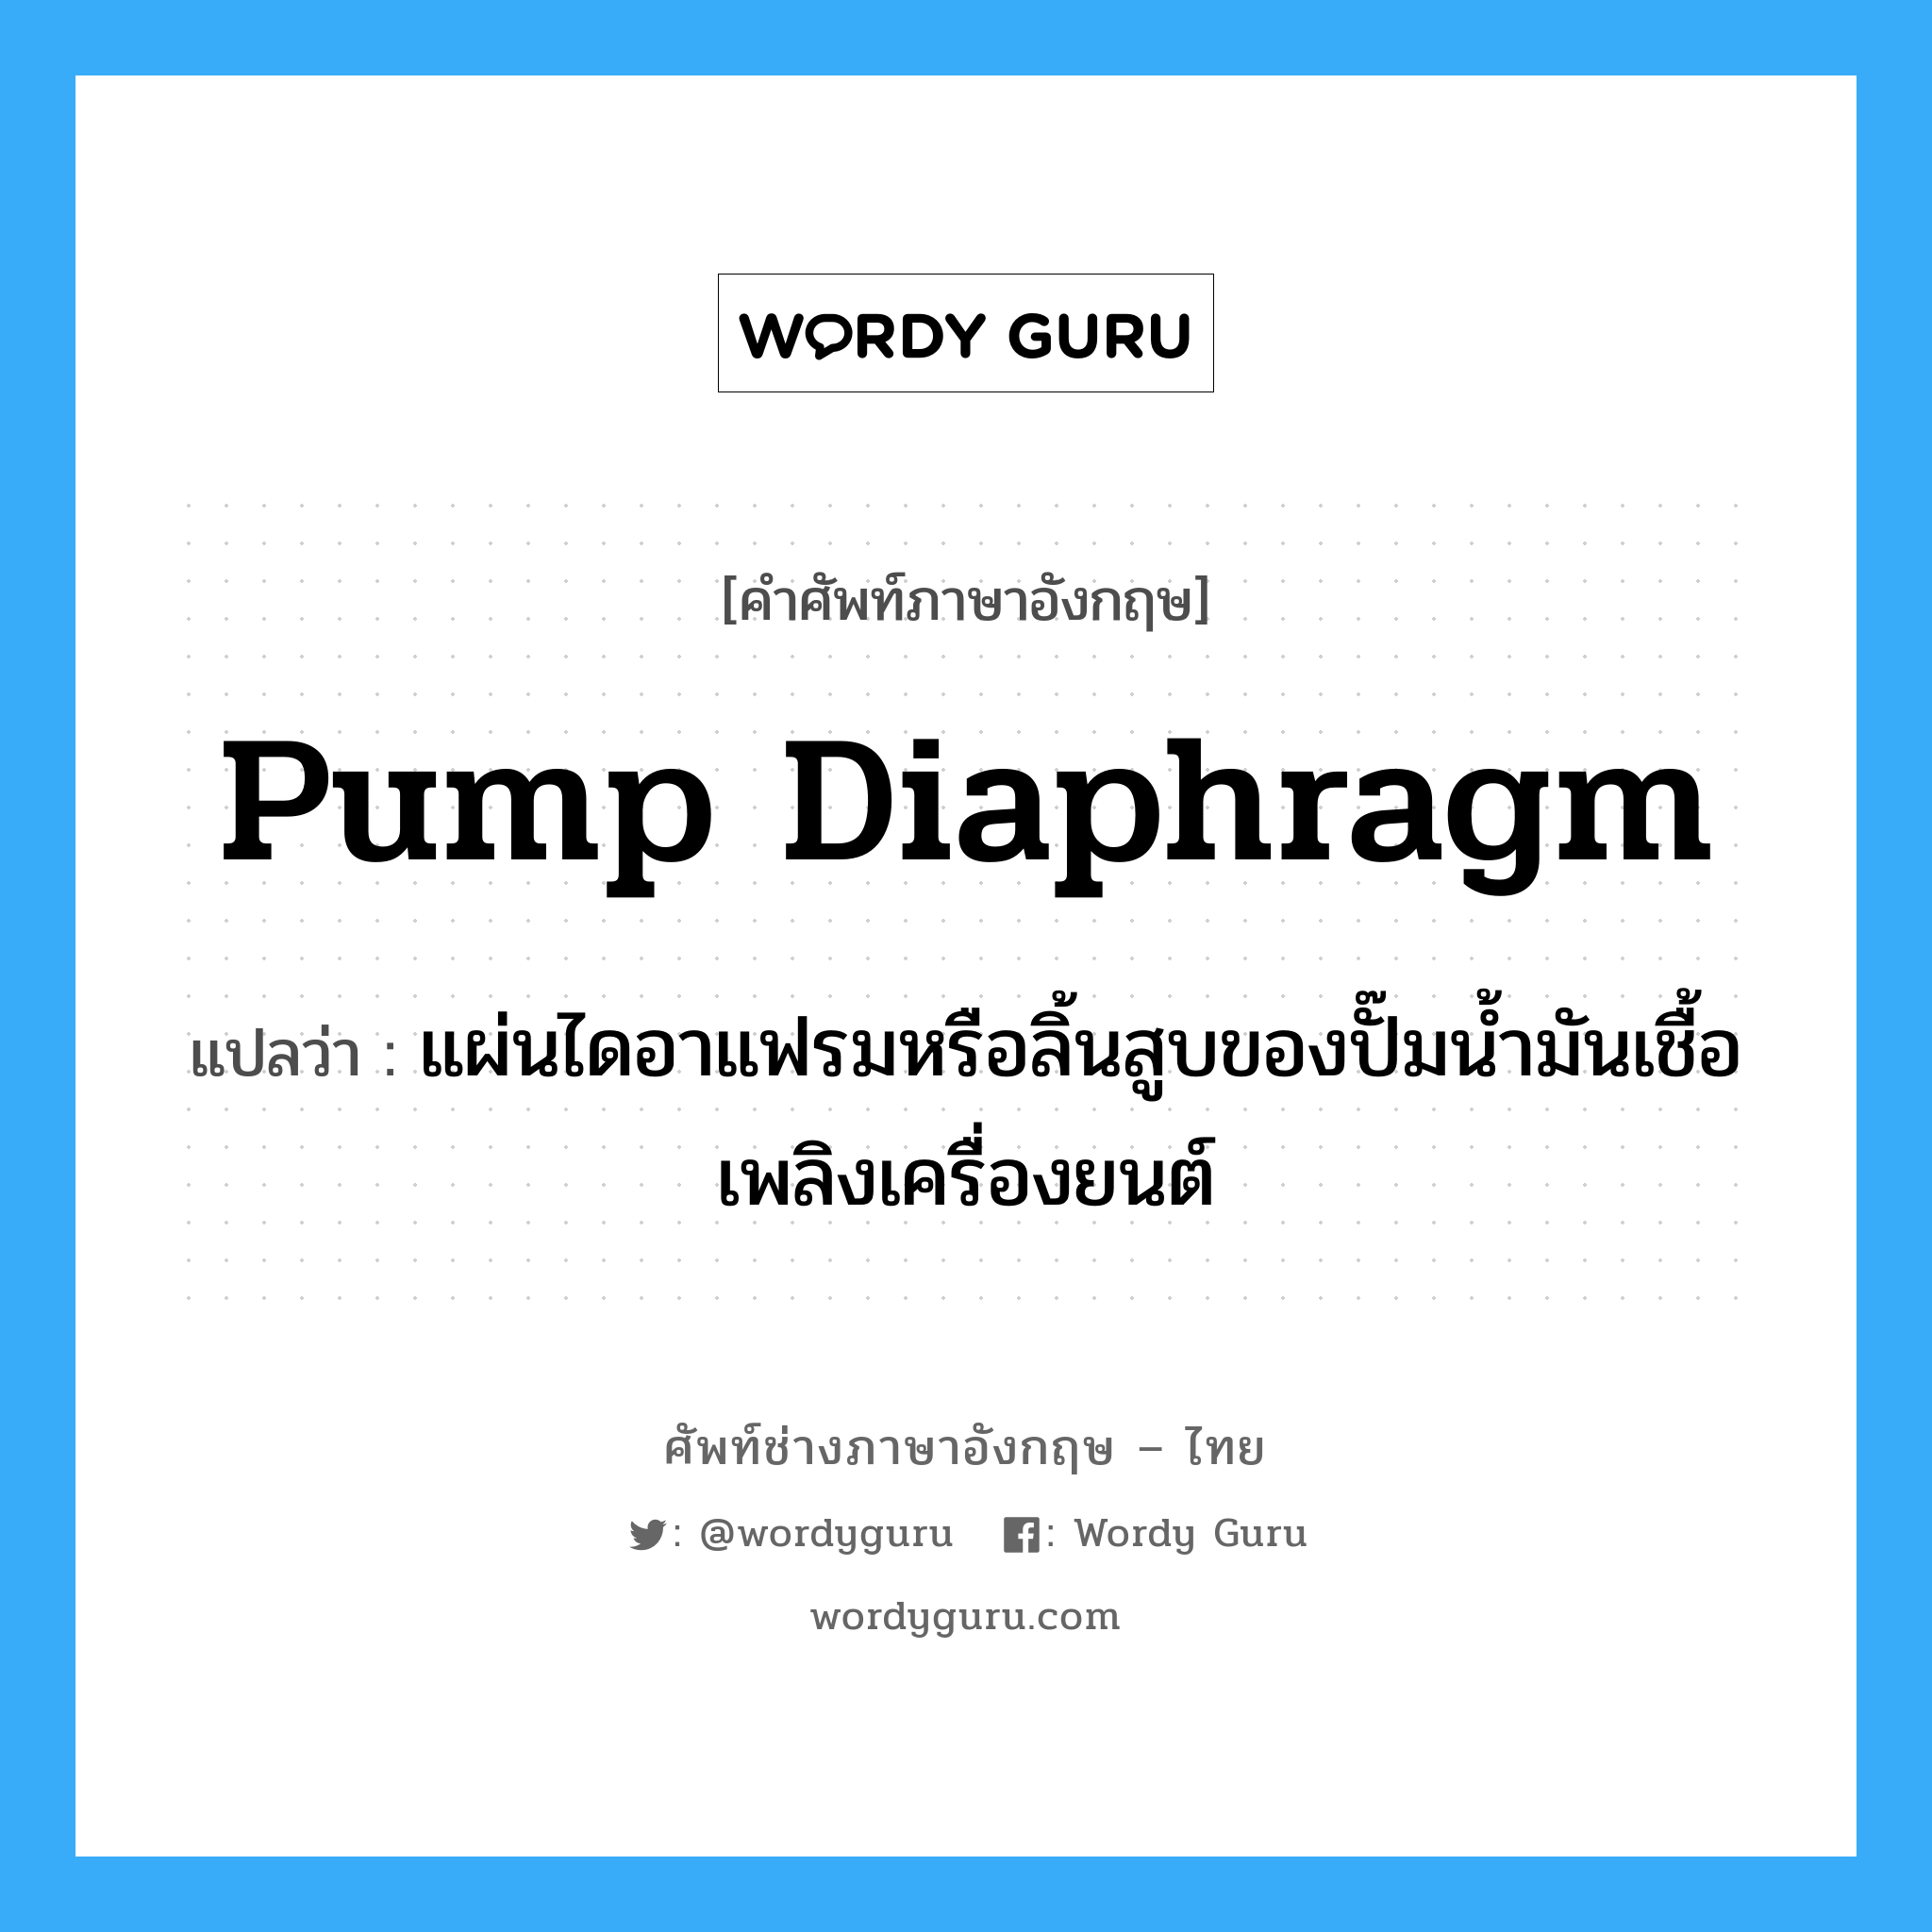 pump diaphragm แปลว่า?, คำศัพท์ช่างภาษาอังกฤษ - ไทย pump diaphragm คำศัพท์ภาษาอังกฤษ pump diaphragm แปลว่า แผ่นไดอาแฟรมหรือลิ้นสูบของปั๊มน้ำมันเชื้อเพลิงเครื่องยนต์